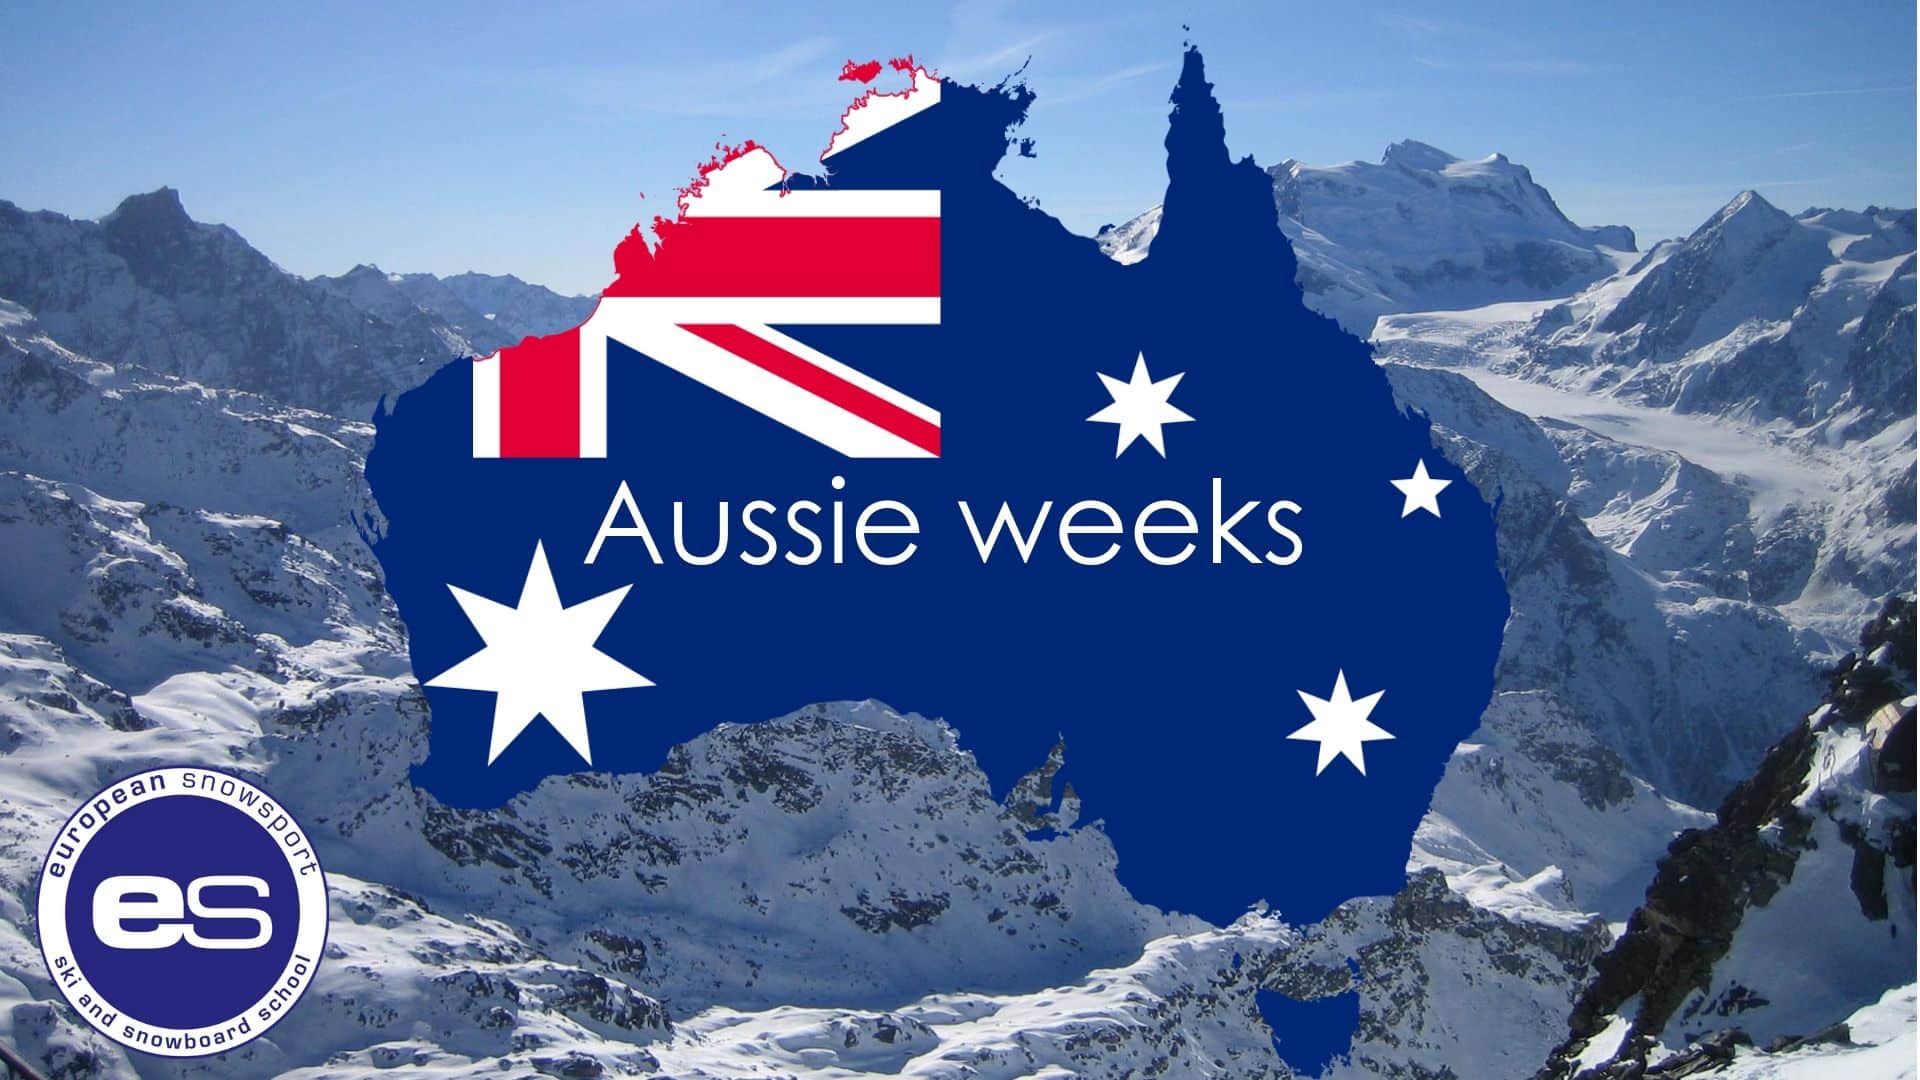 Aussie weeks